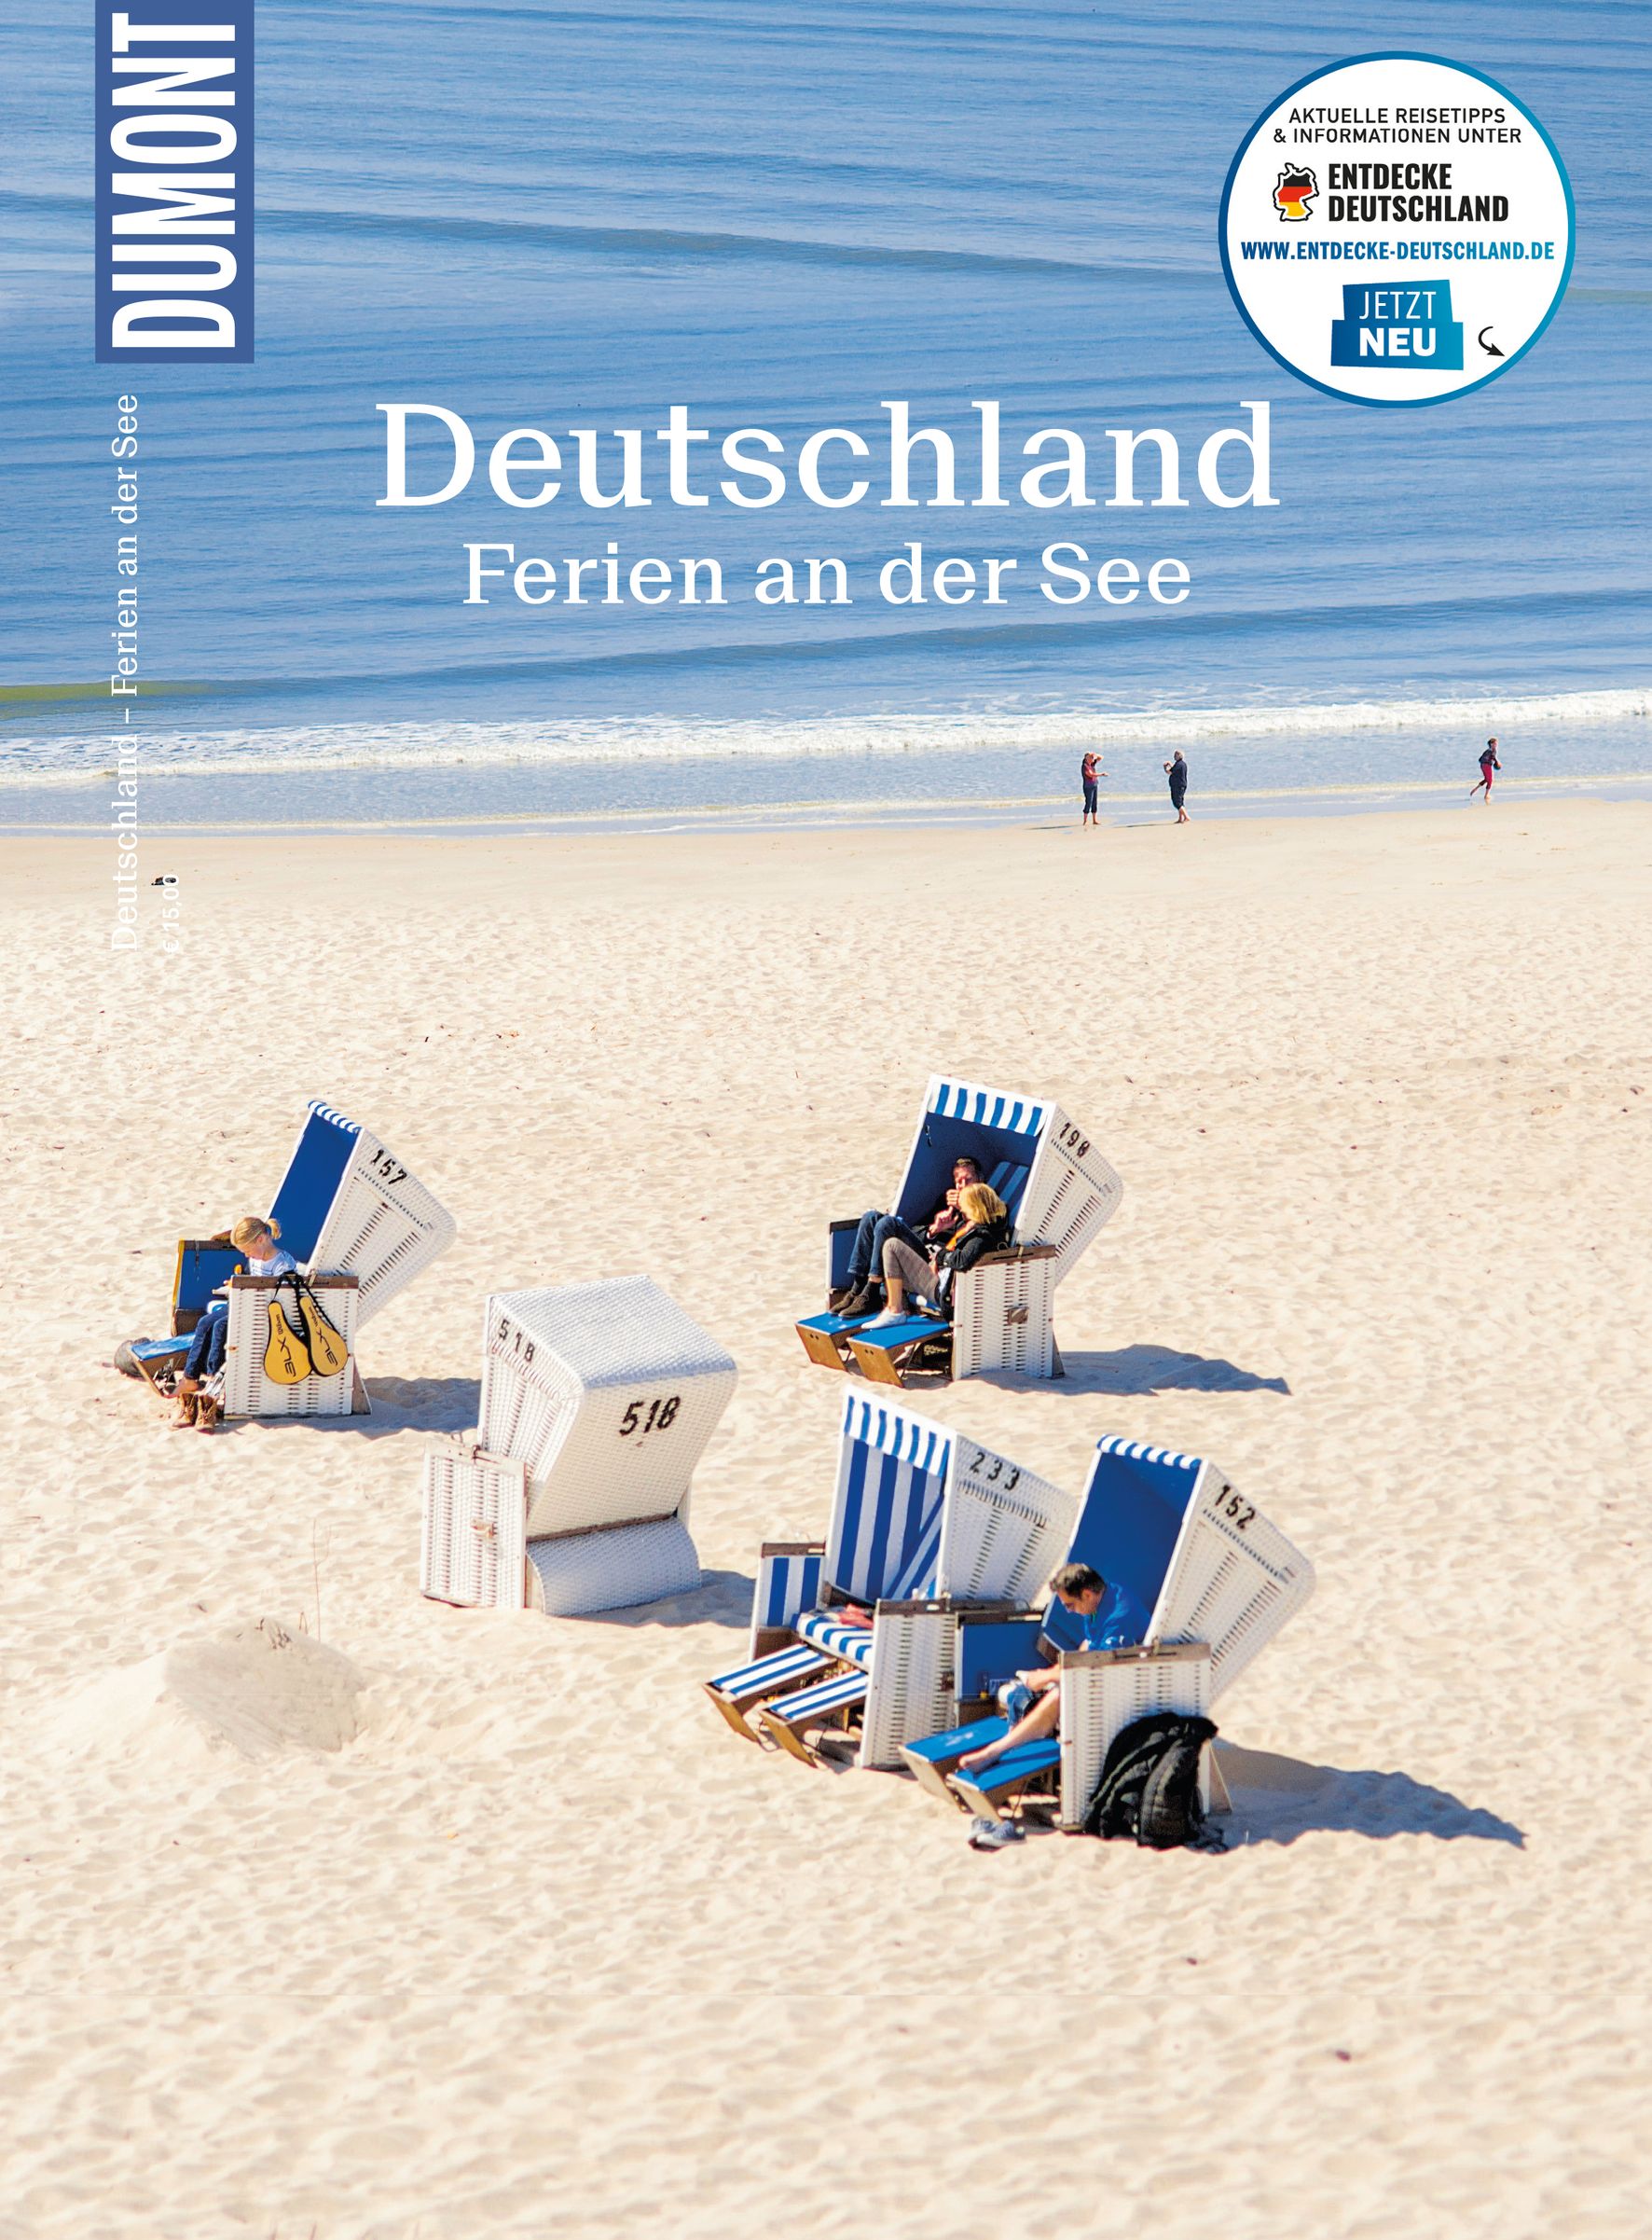 MAIRDUMONT Deutschland, Ferien an der See (eBook)